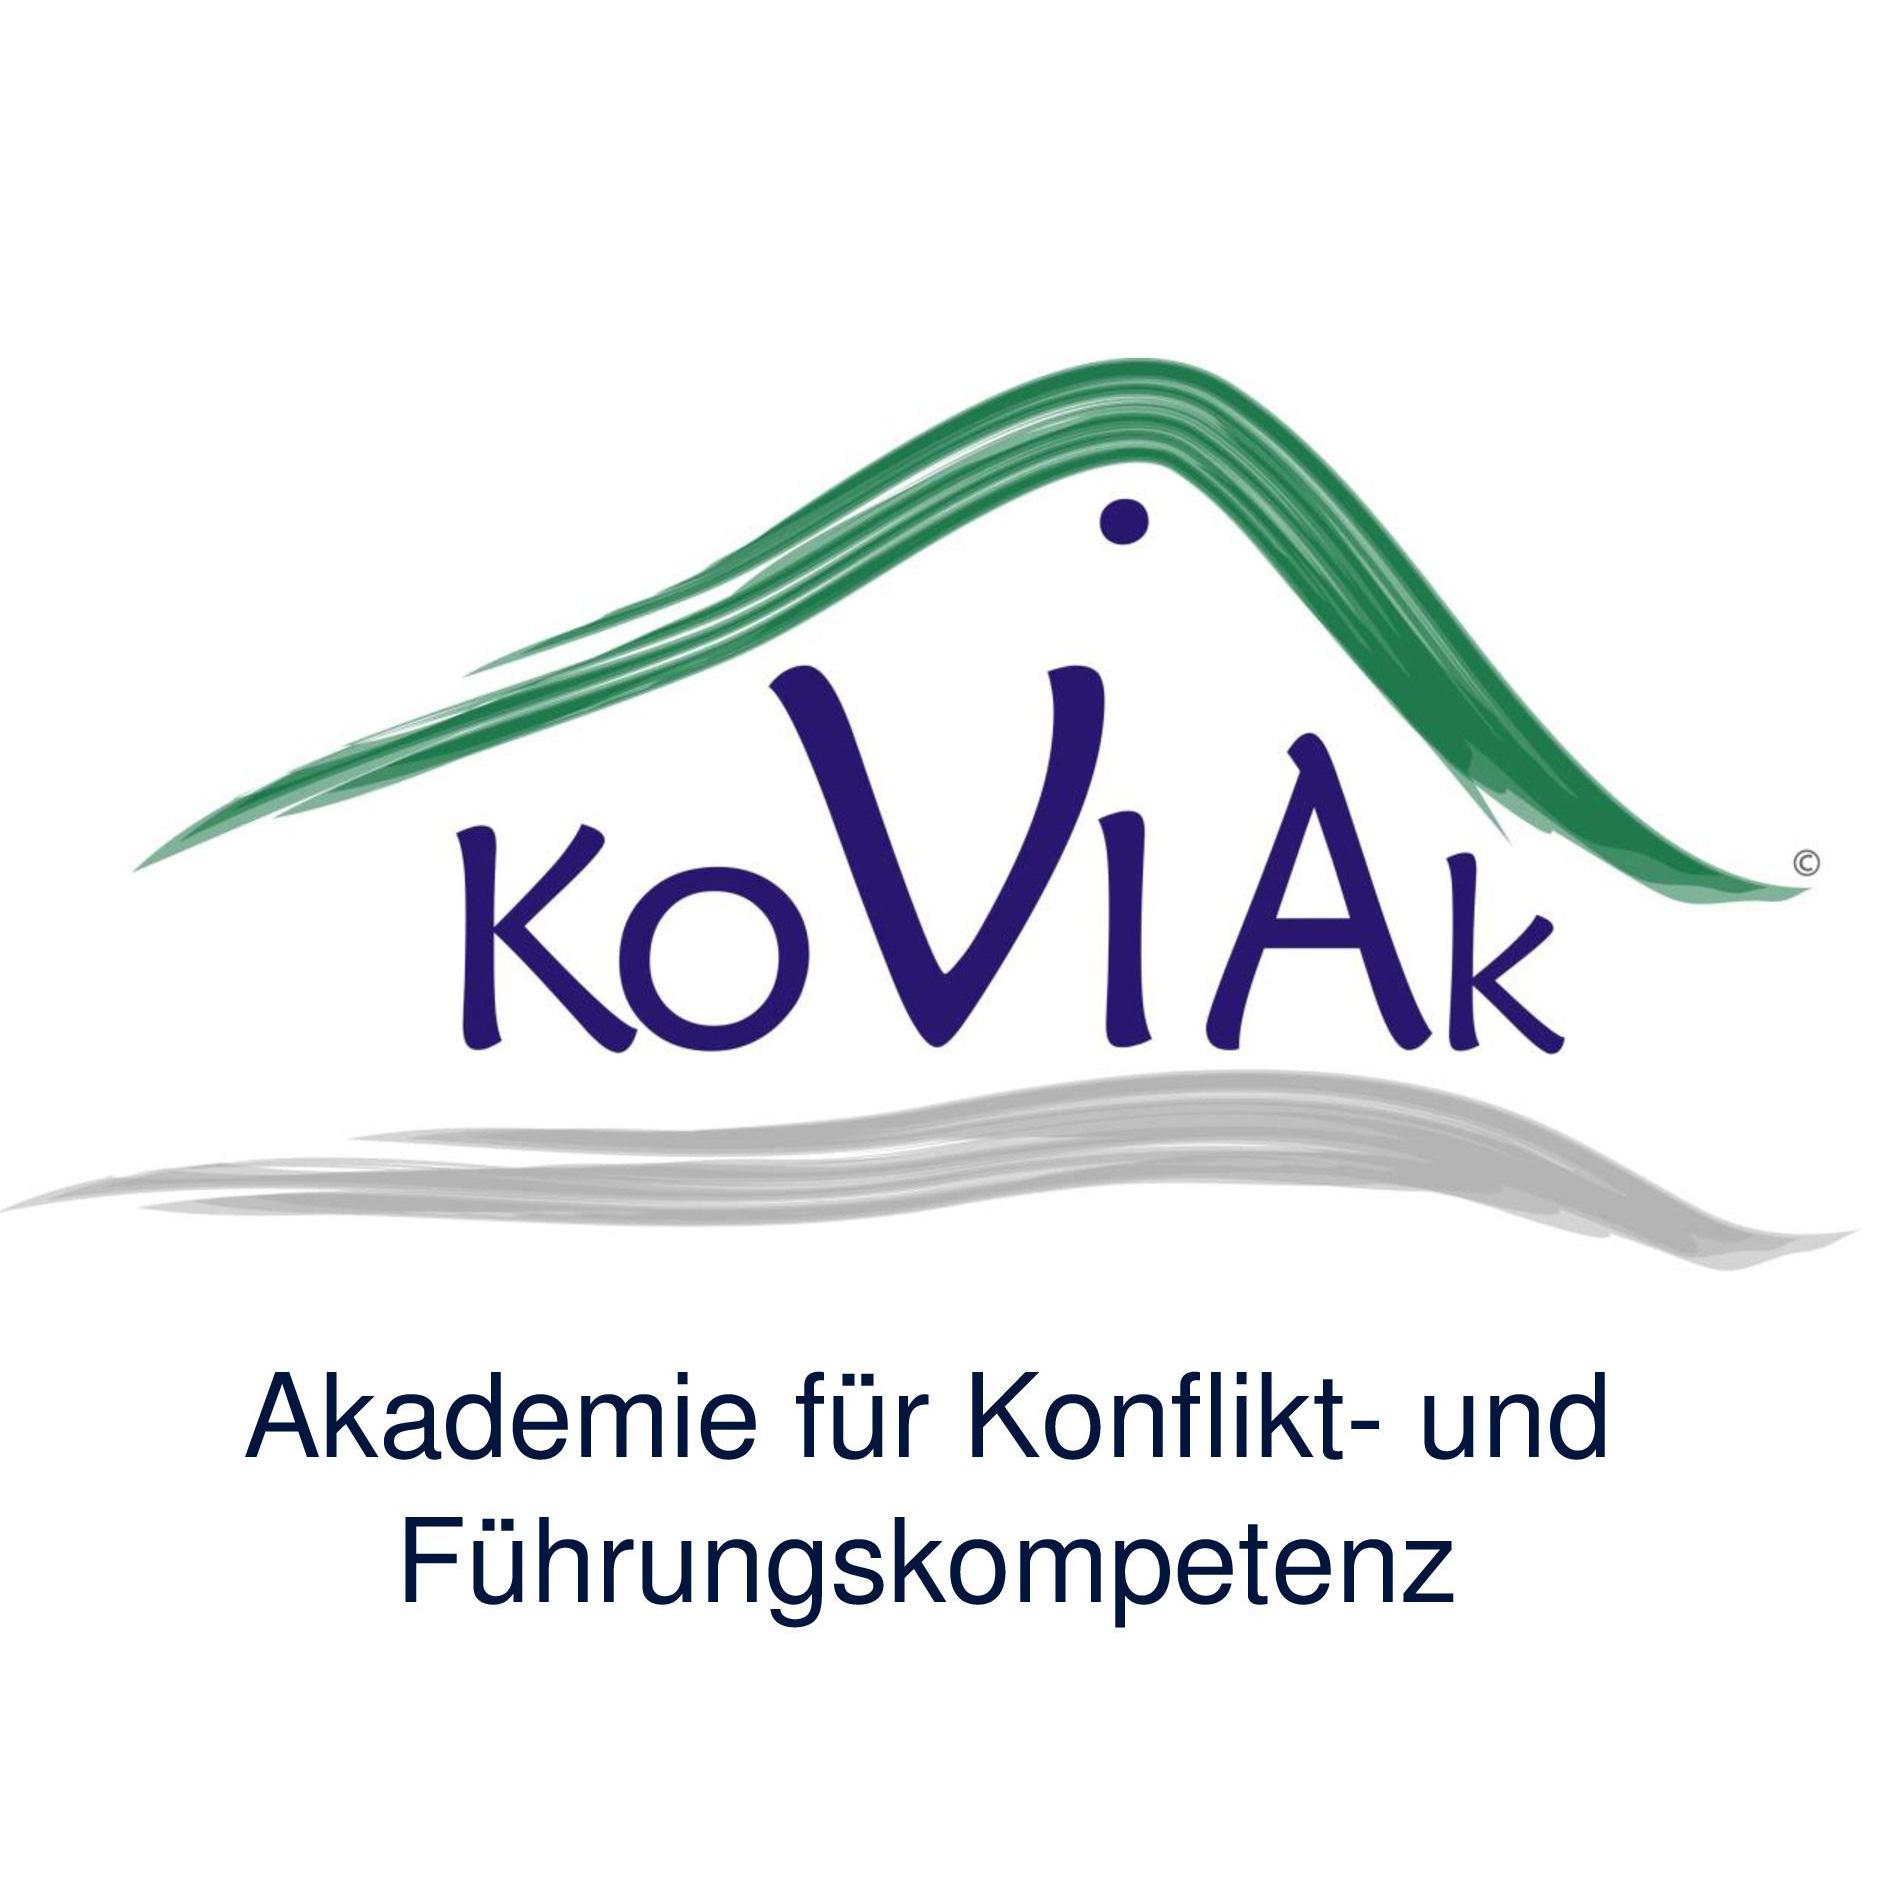 KoViAk Akademie  